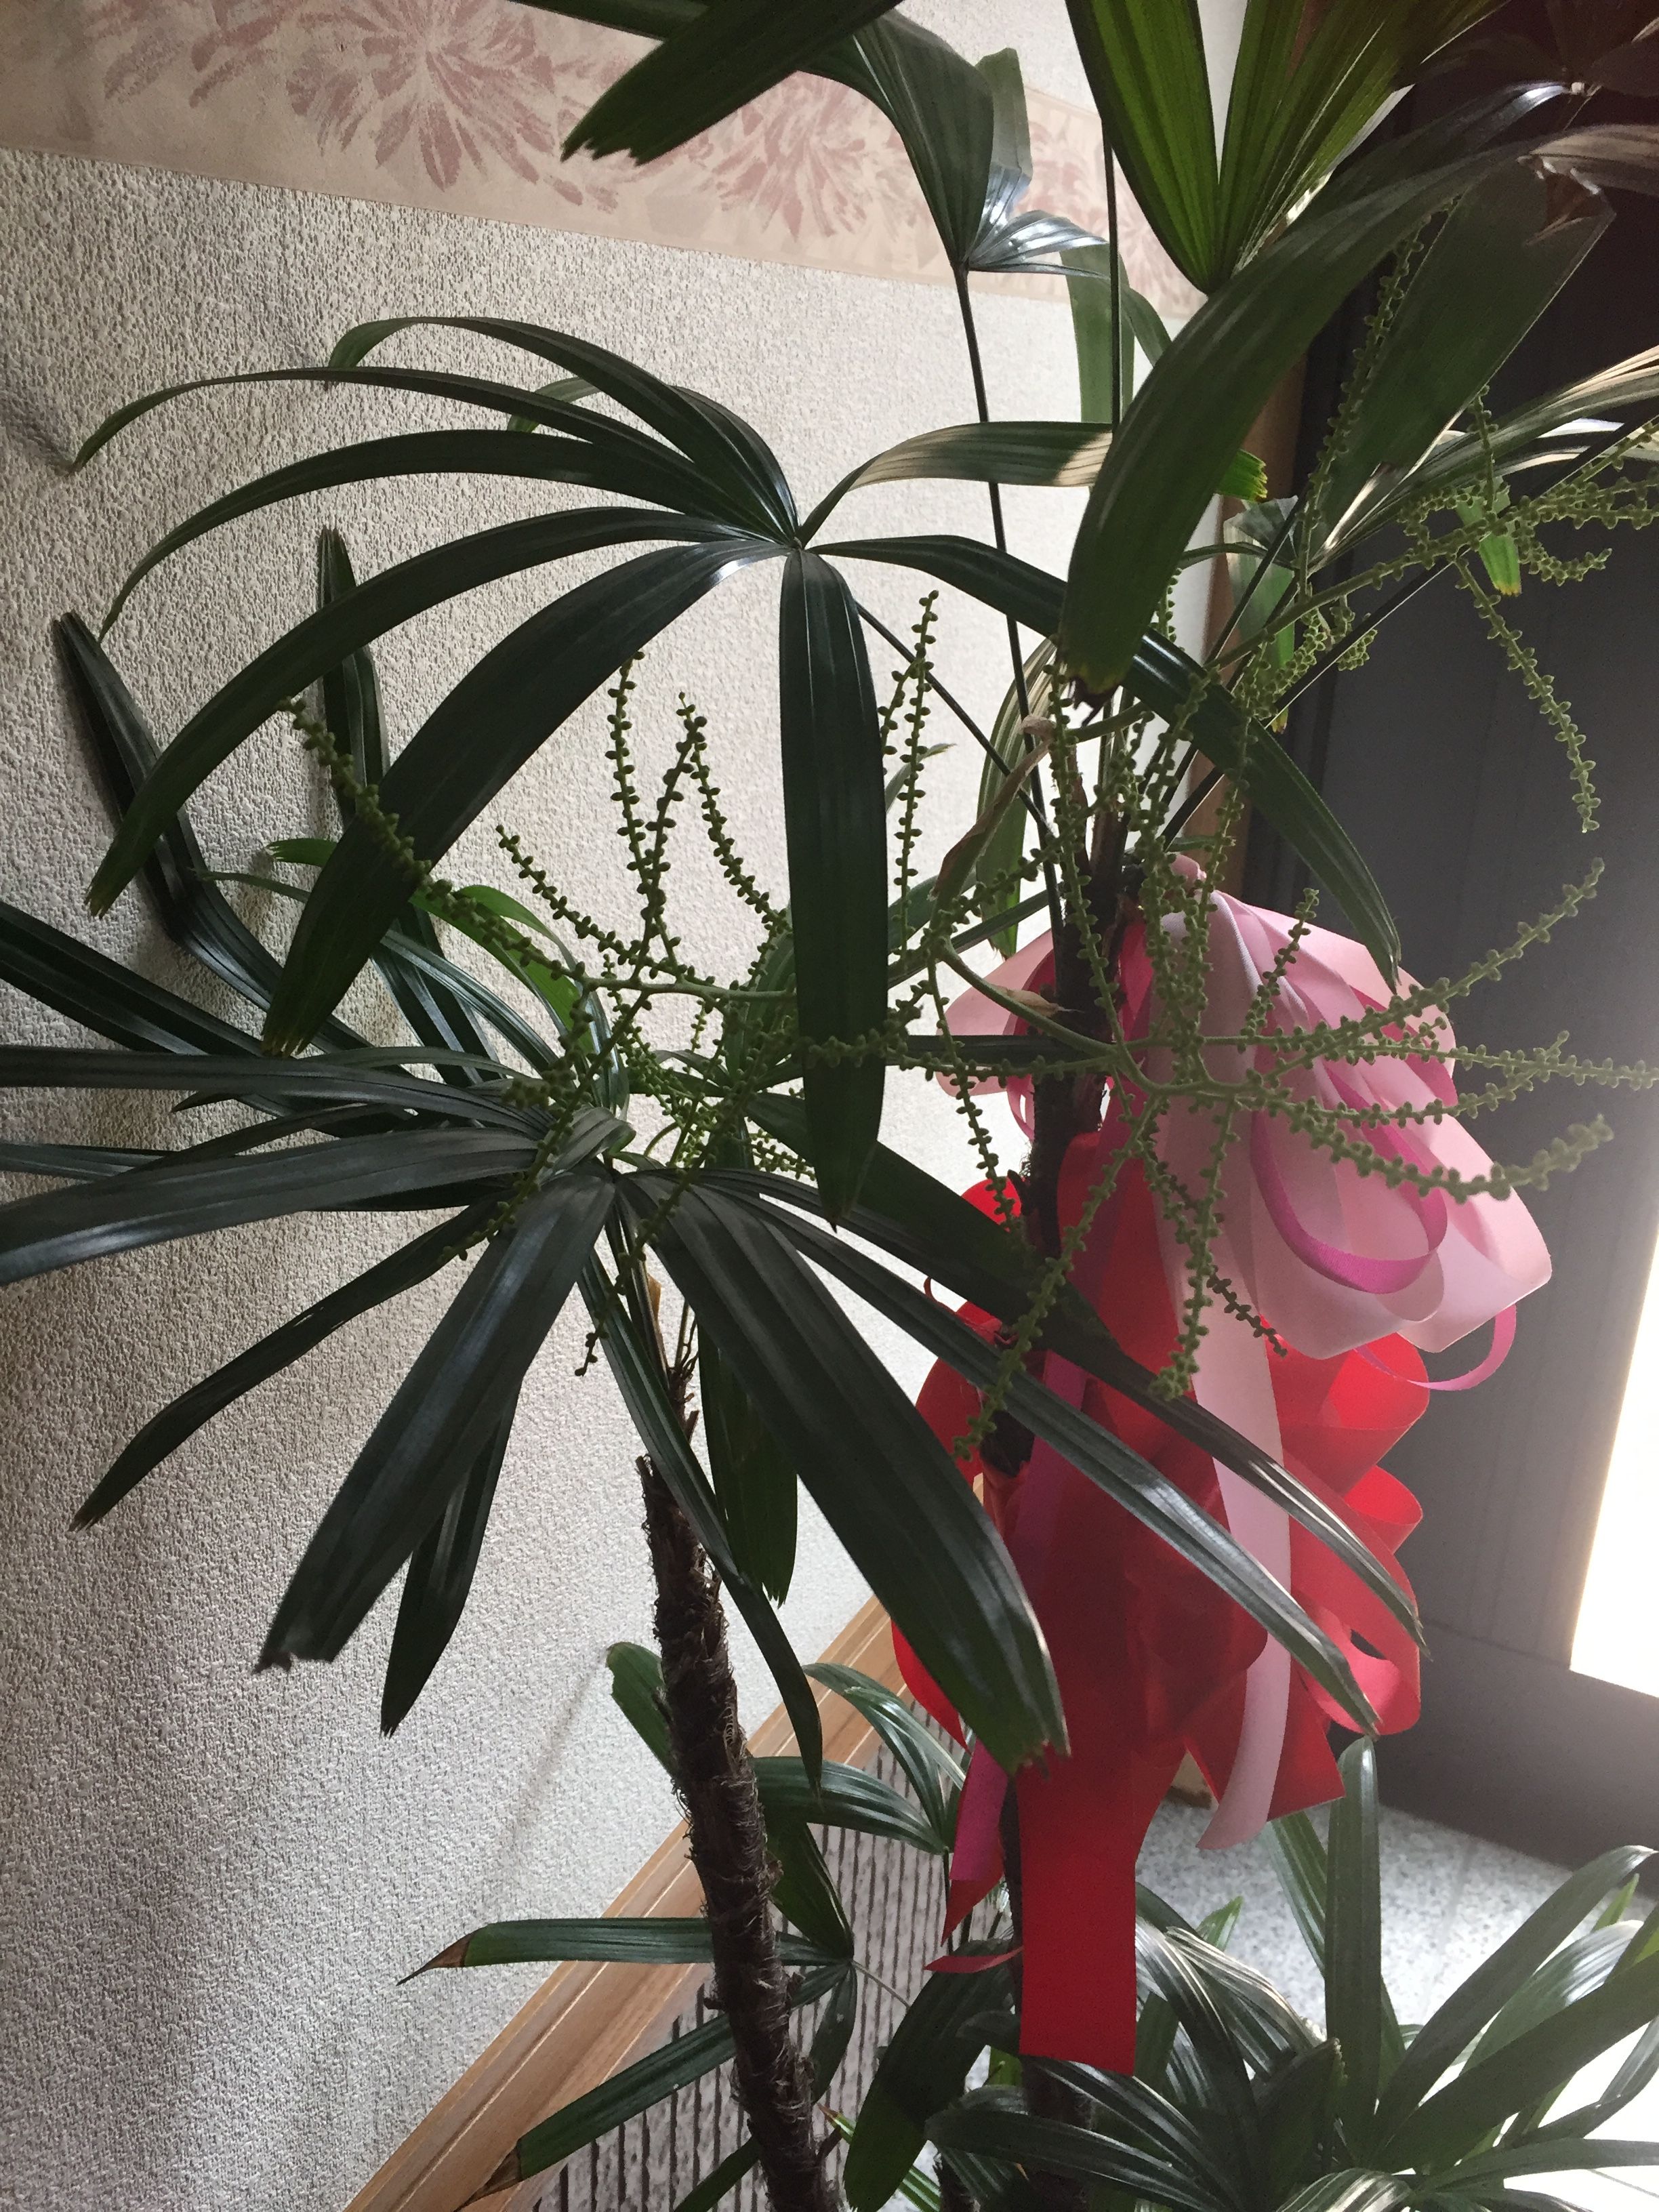 観音竹に似たシュロ竹に花が咲いた 長年の営業経験と人生経験を積んだカサブランカhiroのブログ 楽天ブログ